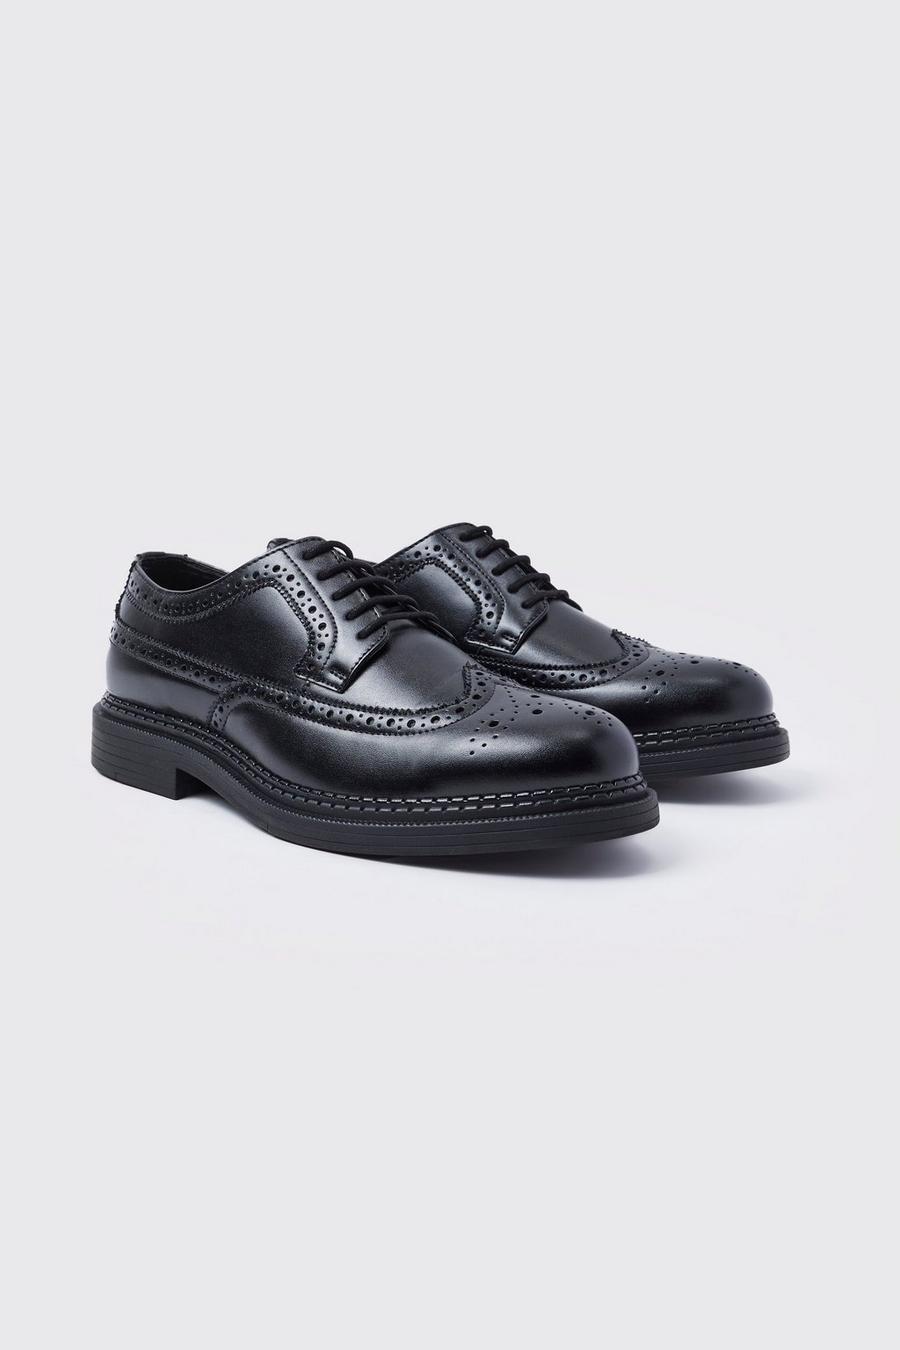 Zapatos brogue clásicos de cuero sintético, Black